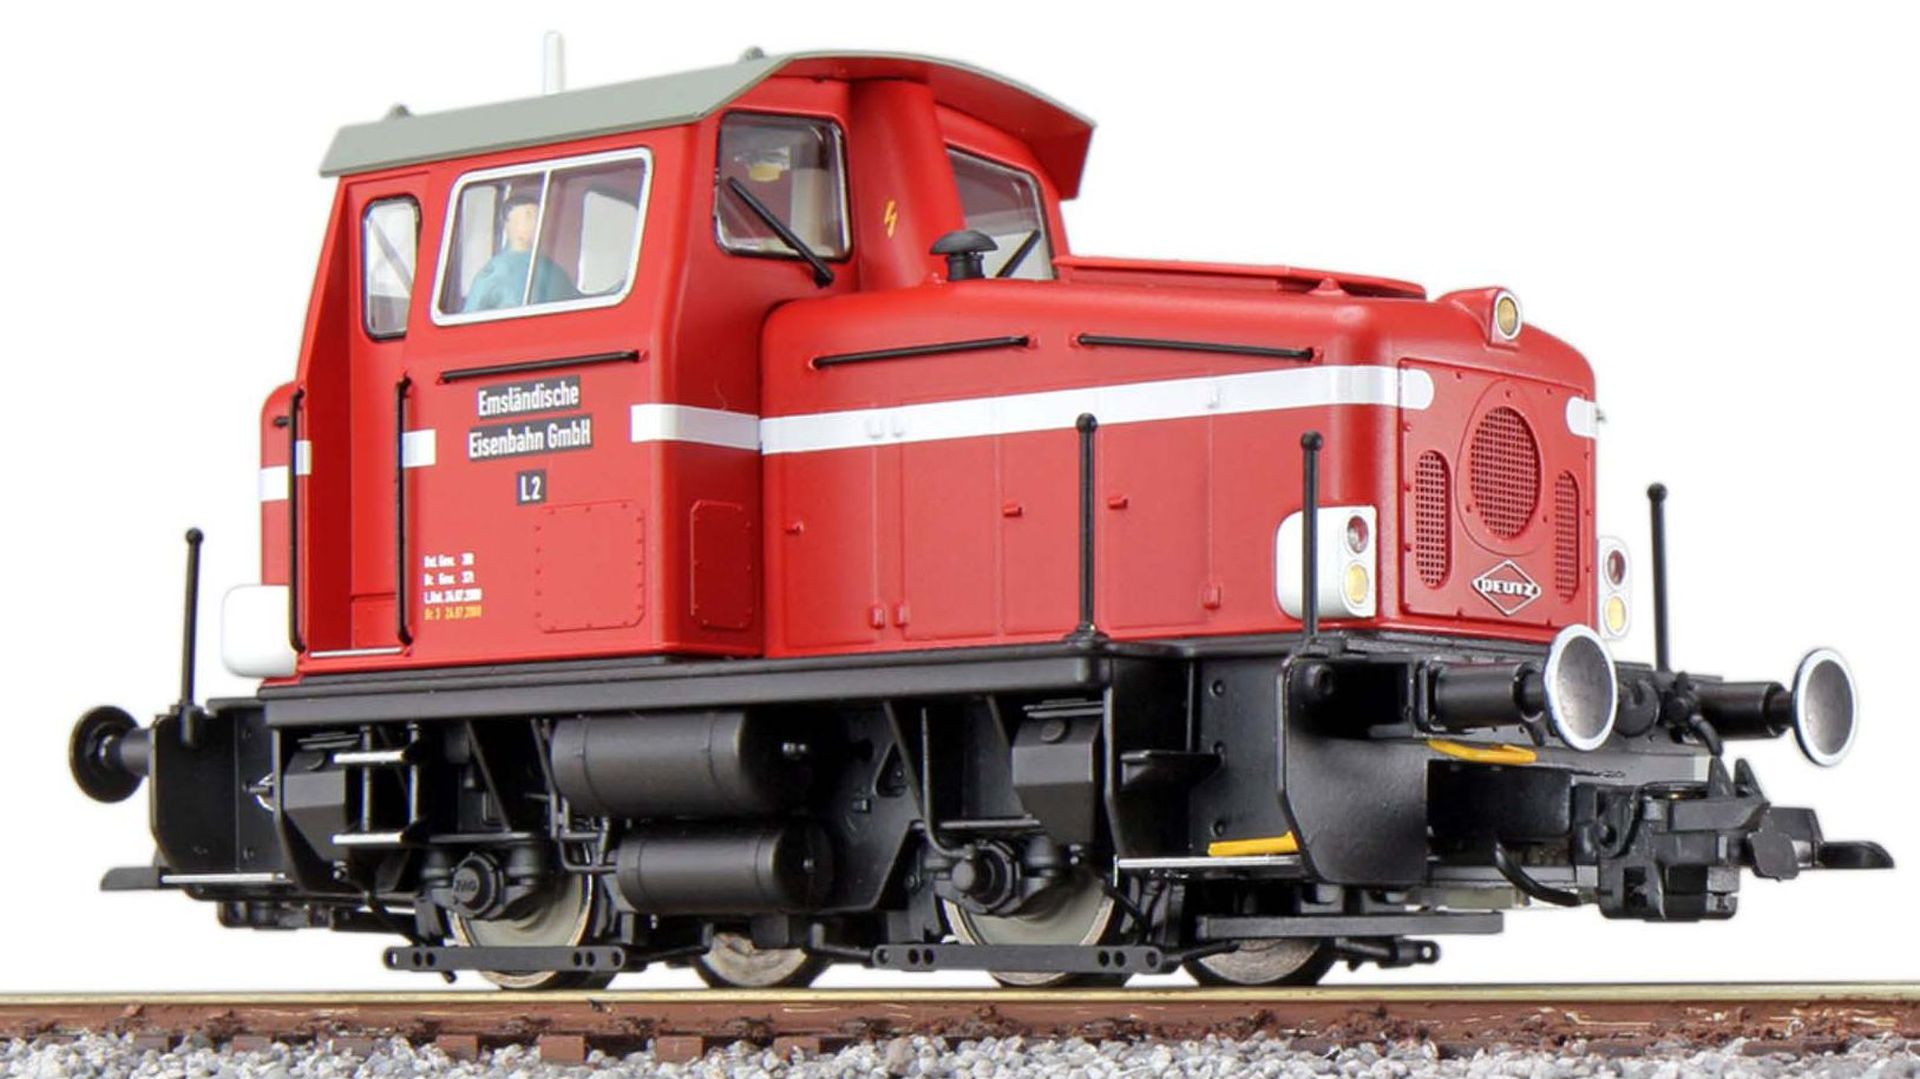 ESU 31441 - Diesellok KG 230, 12, Emsländ. Eisenbahn, Ep.V, DC-AC-Sound